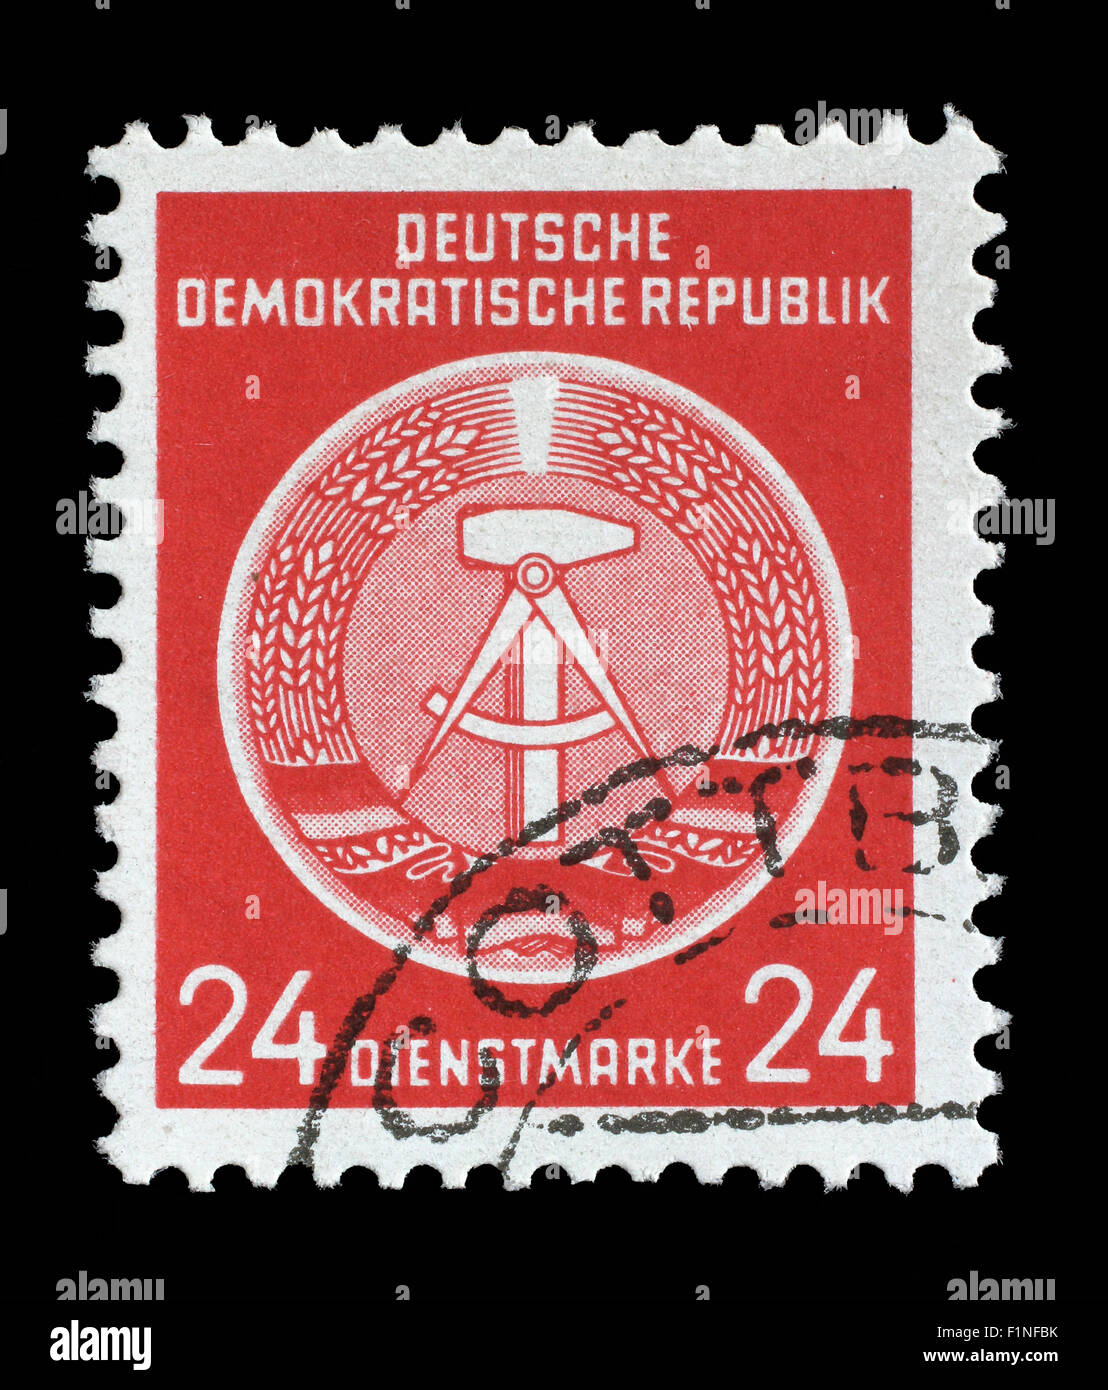 Timbres en RDA (République démocratique allemande - l'Allemagne de l'Est) montre les armoiries nationales DDR, vers 1952 Banque D'Images